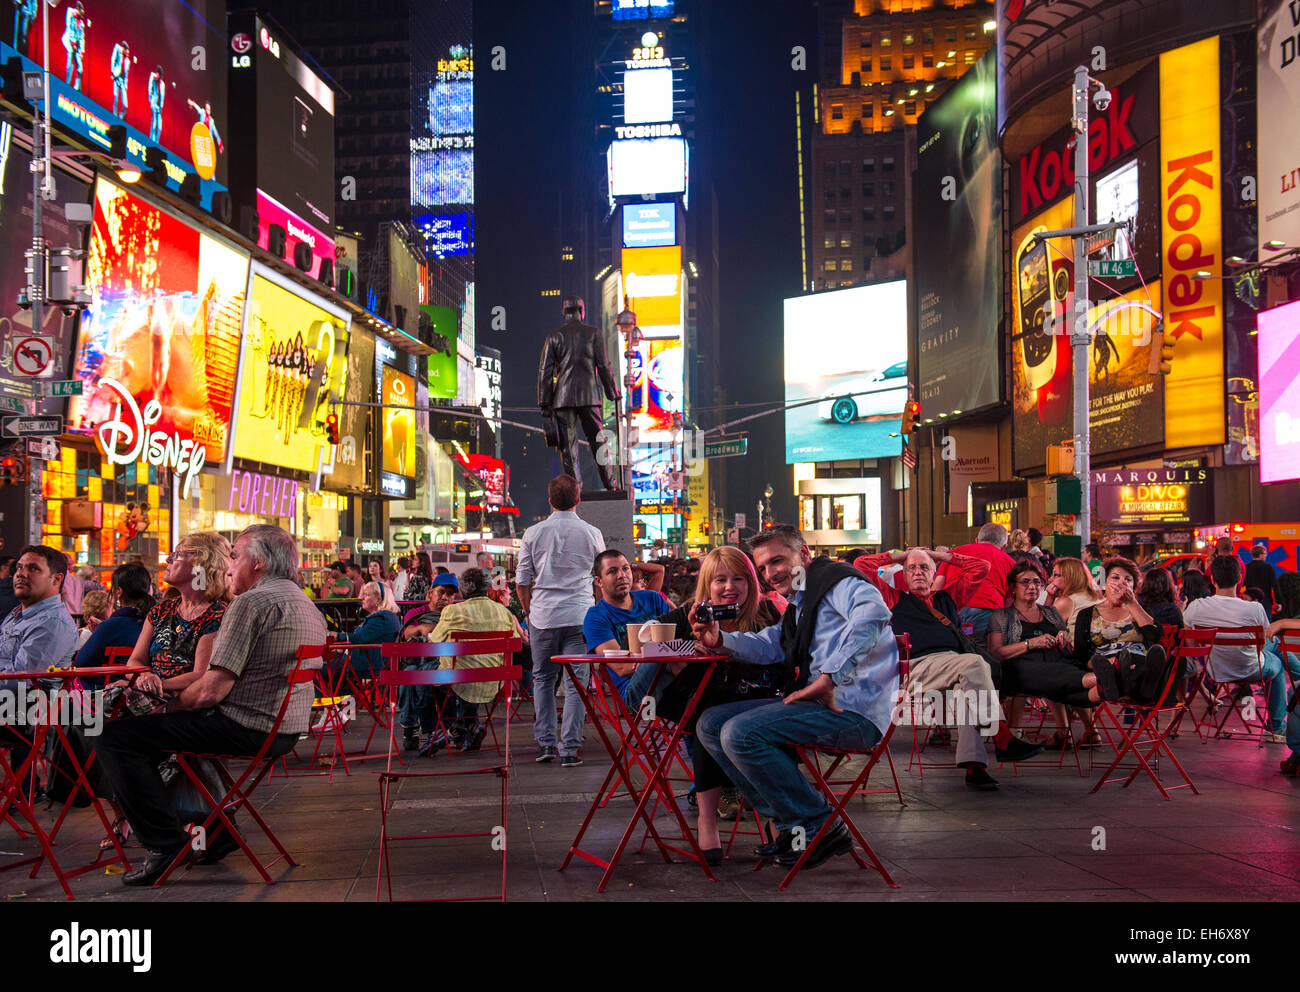 Nueva York, Broadway. La gente en la calle. Time Square por la noche, con muchas luces y señales de anuncio Foto de stock